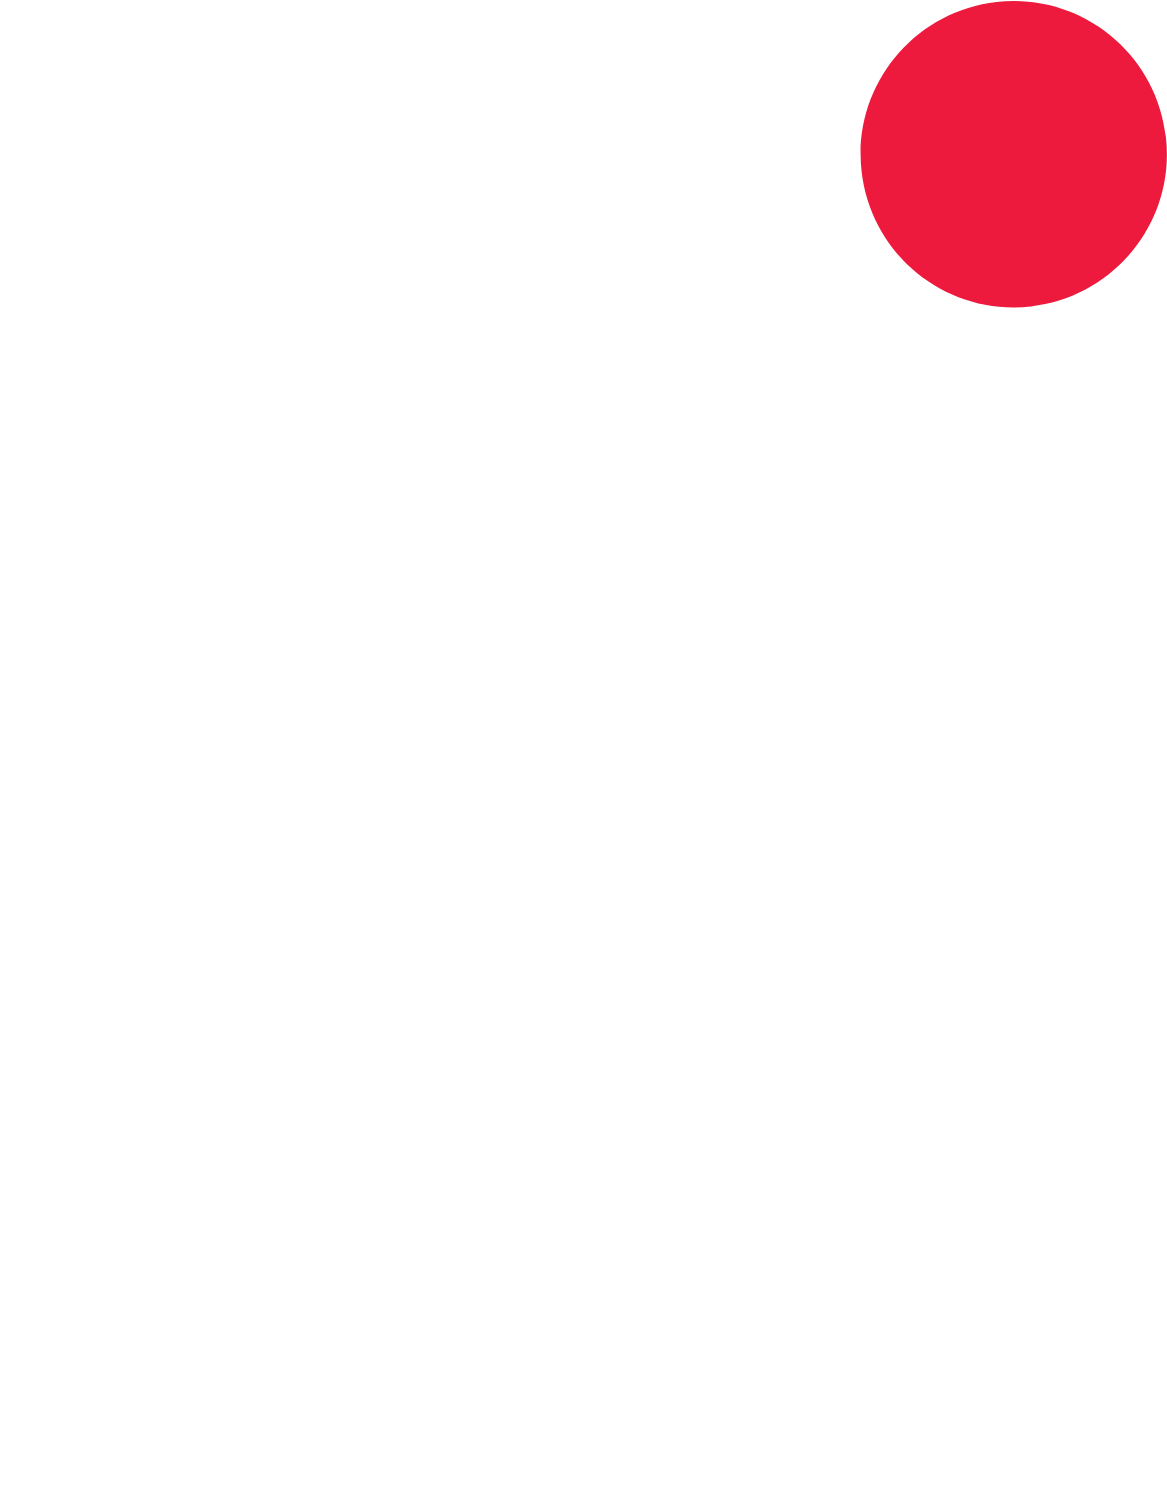 Singtel logo for dark backgrounds (transparent PNG)